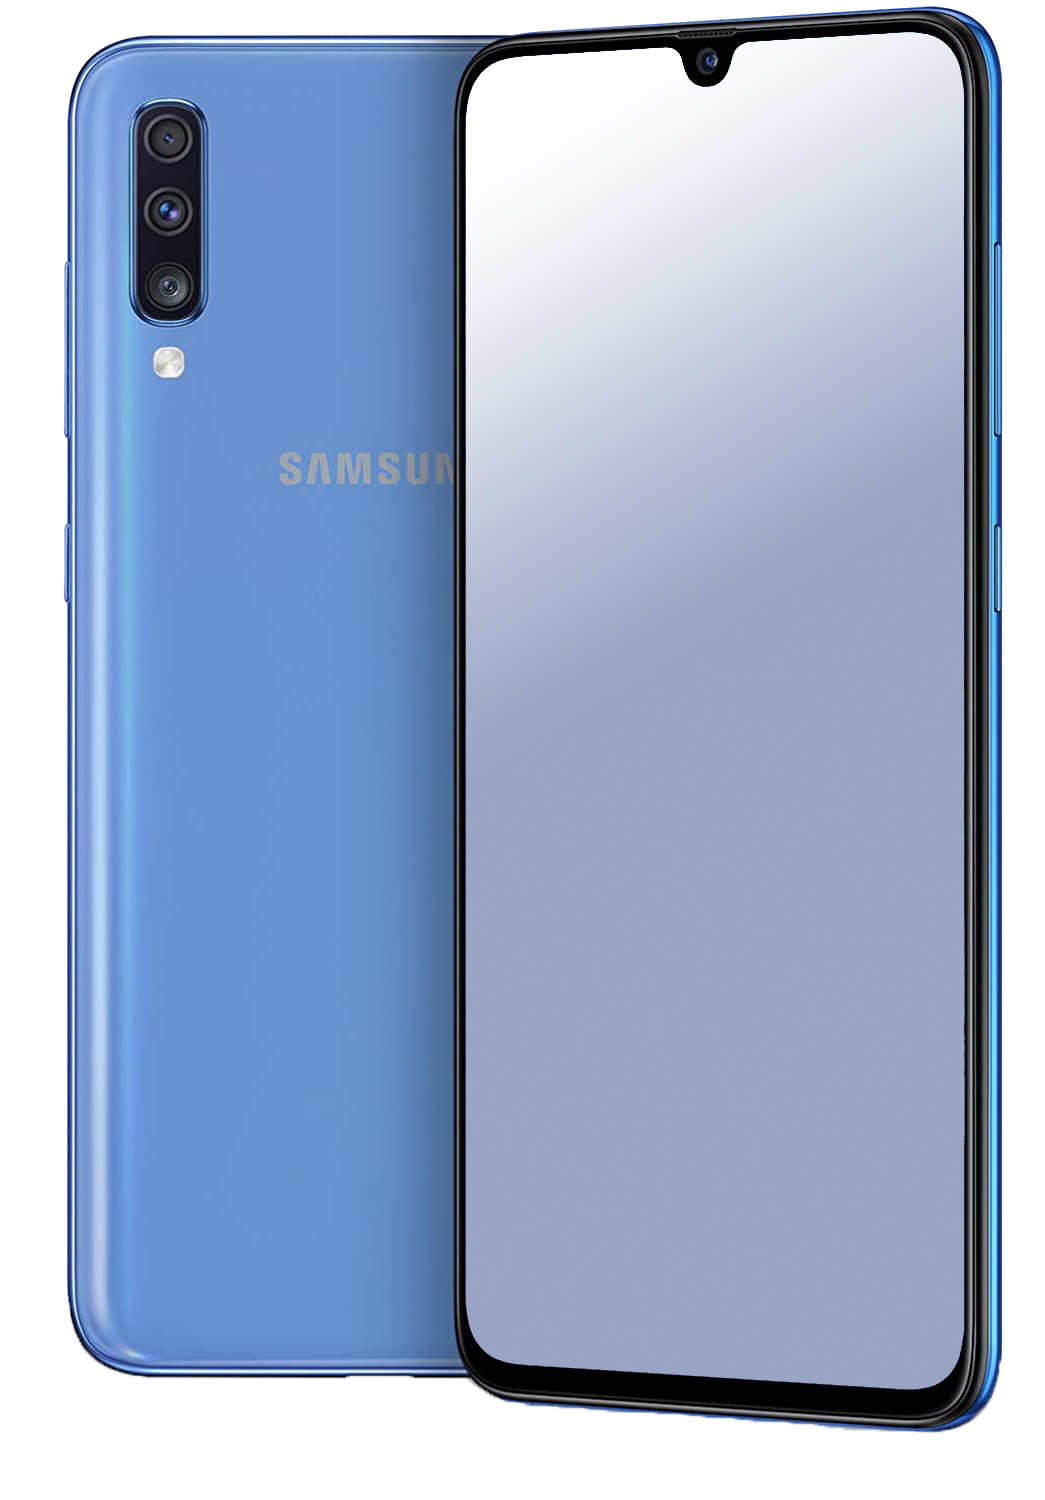 Samsung Galaxy A70 Dual-SIM blau - Ohne Vertrag